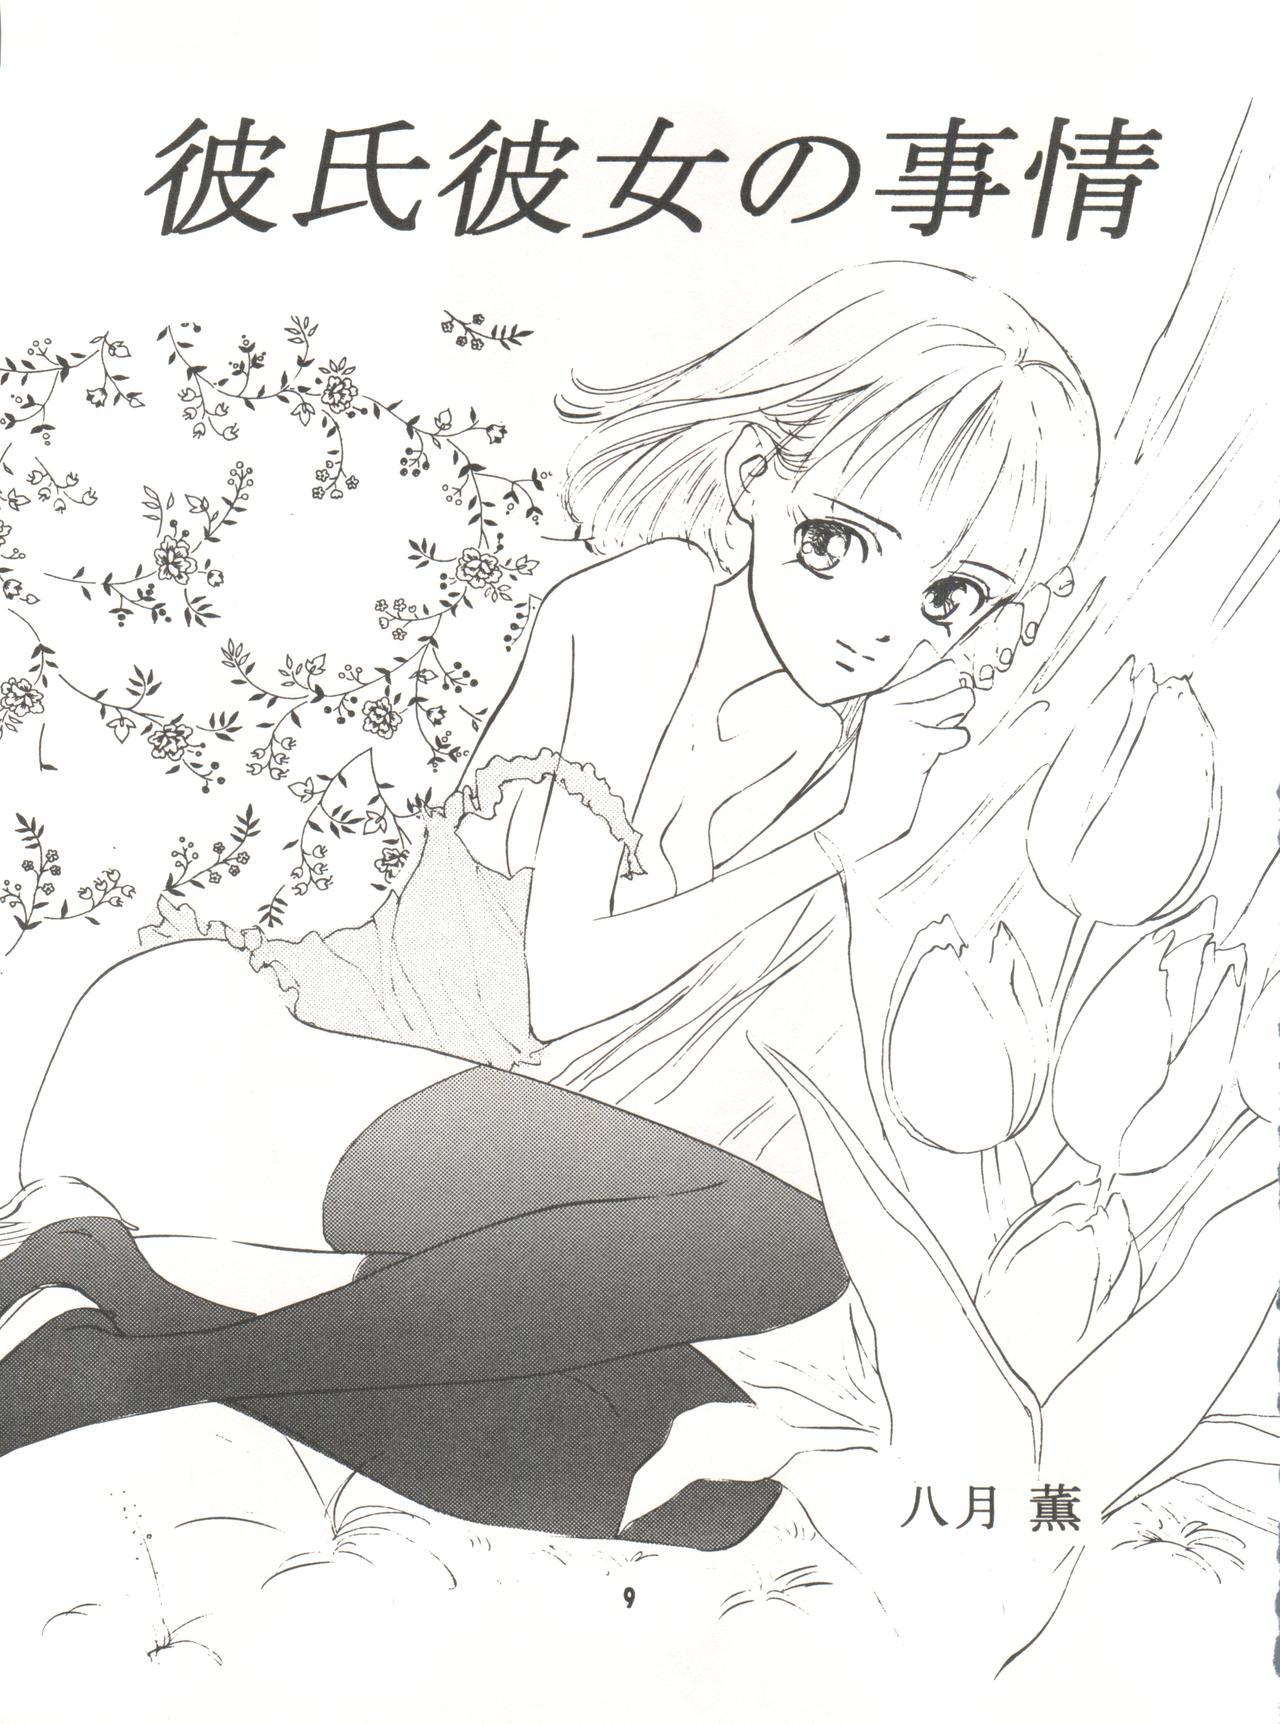 Best Wanpaku Anime Vol. 9 Kare Kano Tokushuu Kanojo wa... - Kare kano Voyeur - Page 11